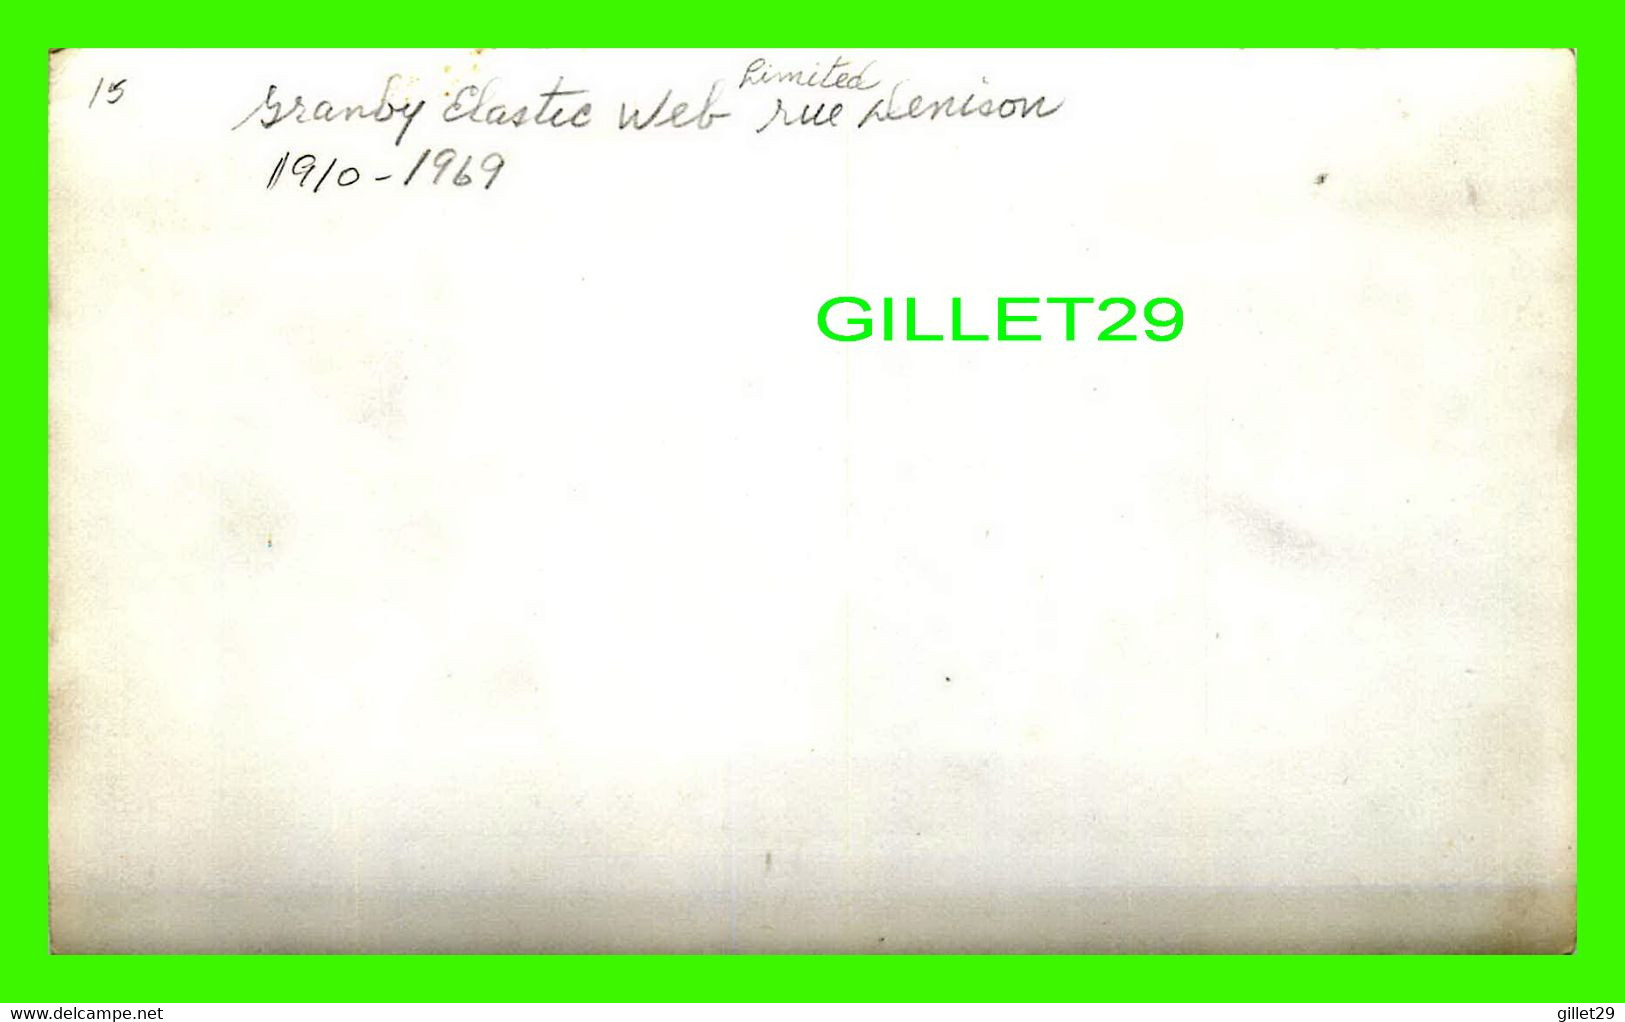 GRANBY, QUÉBEC - GRANBY ELASTIC WEB LIMITED, RUE DENISON 1910-1969 - CARTE PHOTO - - Granby